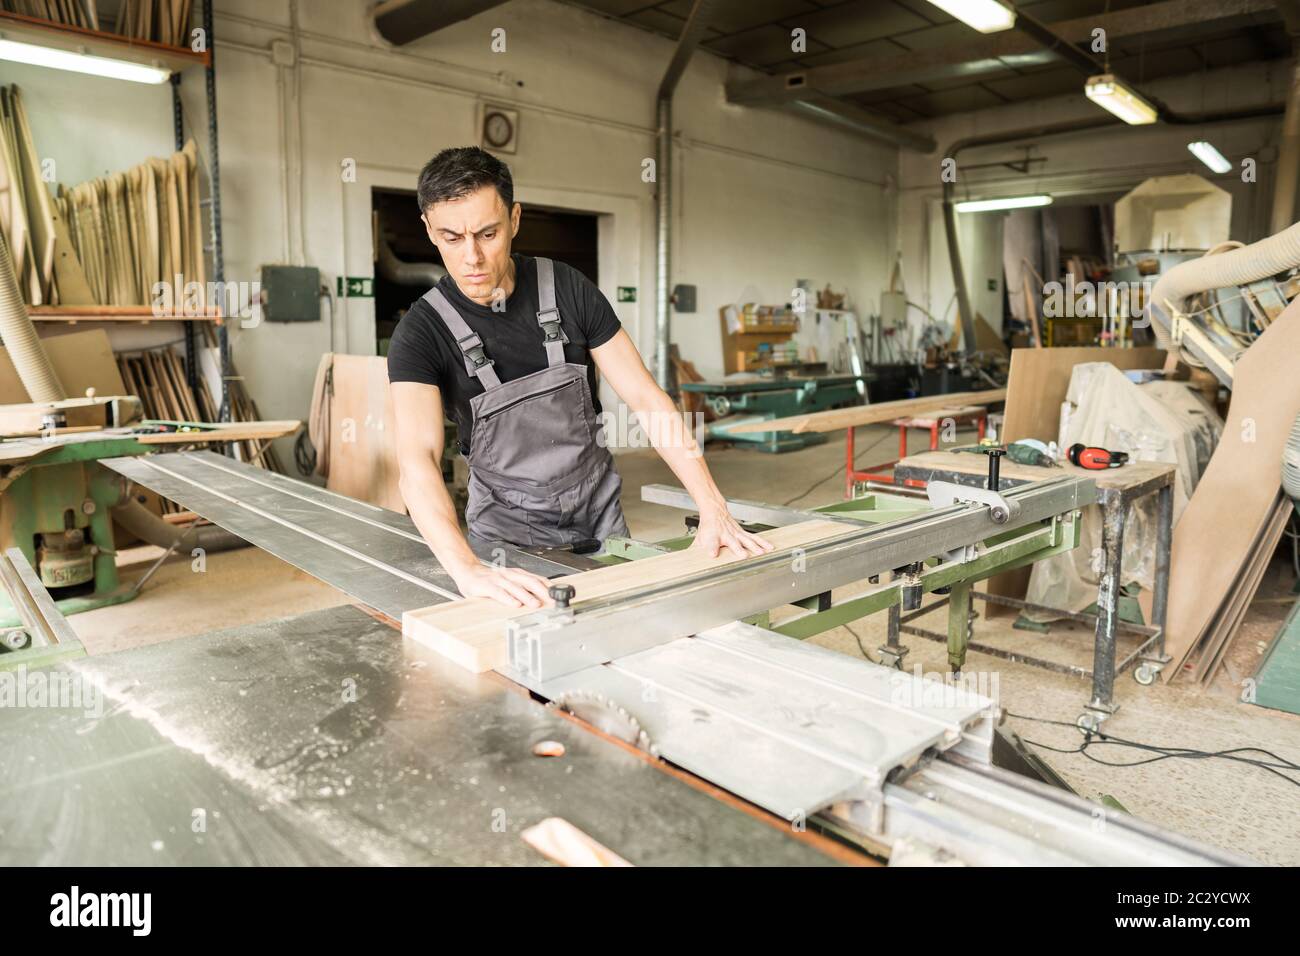 Un travailleur qui coupe sur une scie à table coulissante en usine. Photo intermédiaire. Banque D'Images